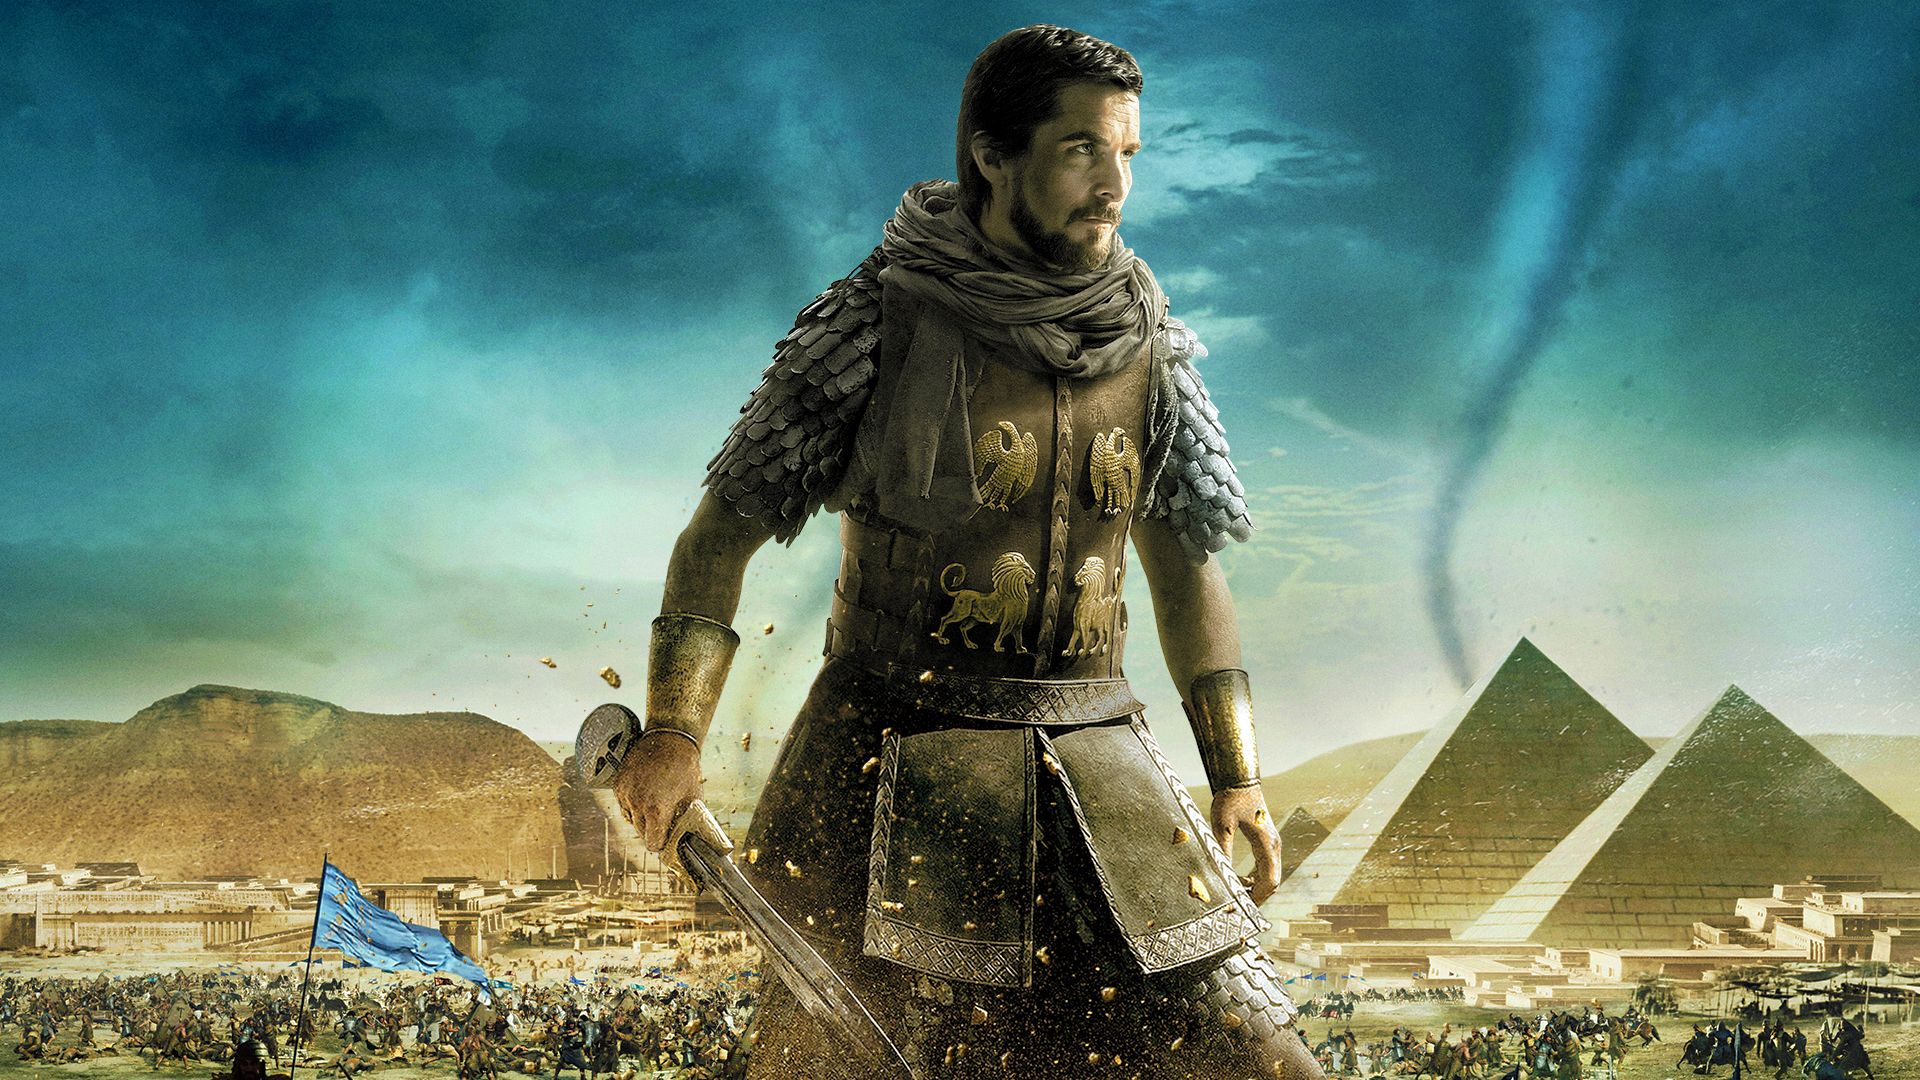 god hardened pharaoh's heart - from Exodus Gods and Kings the movie